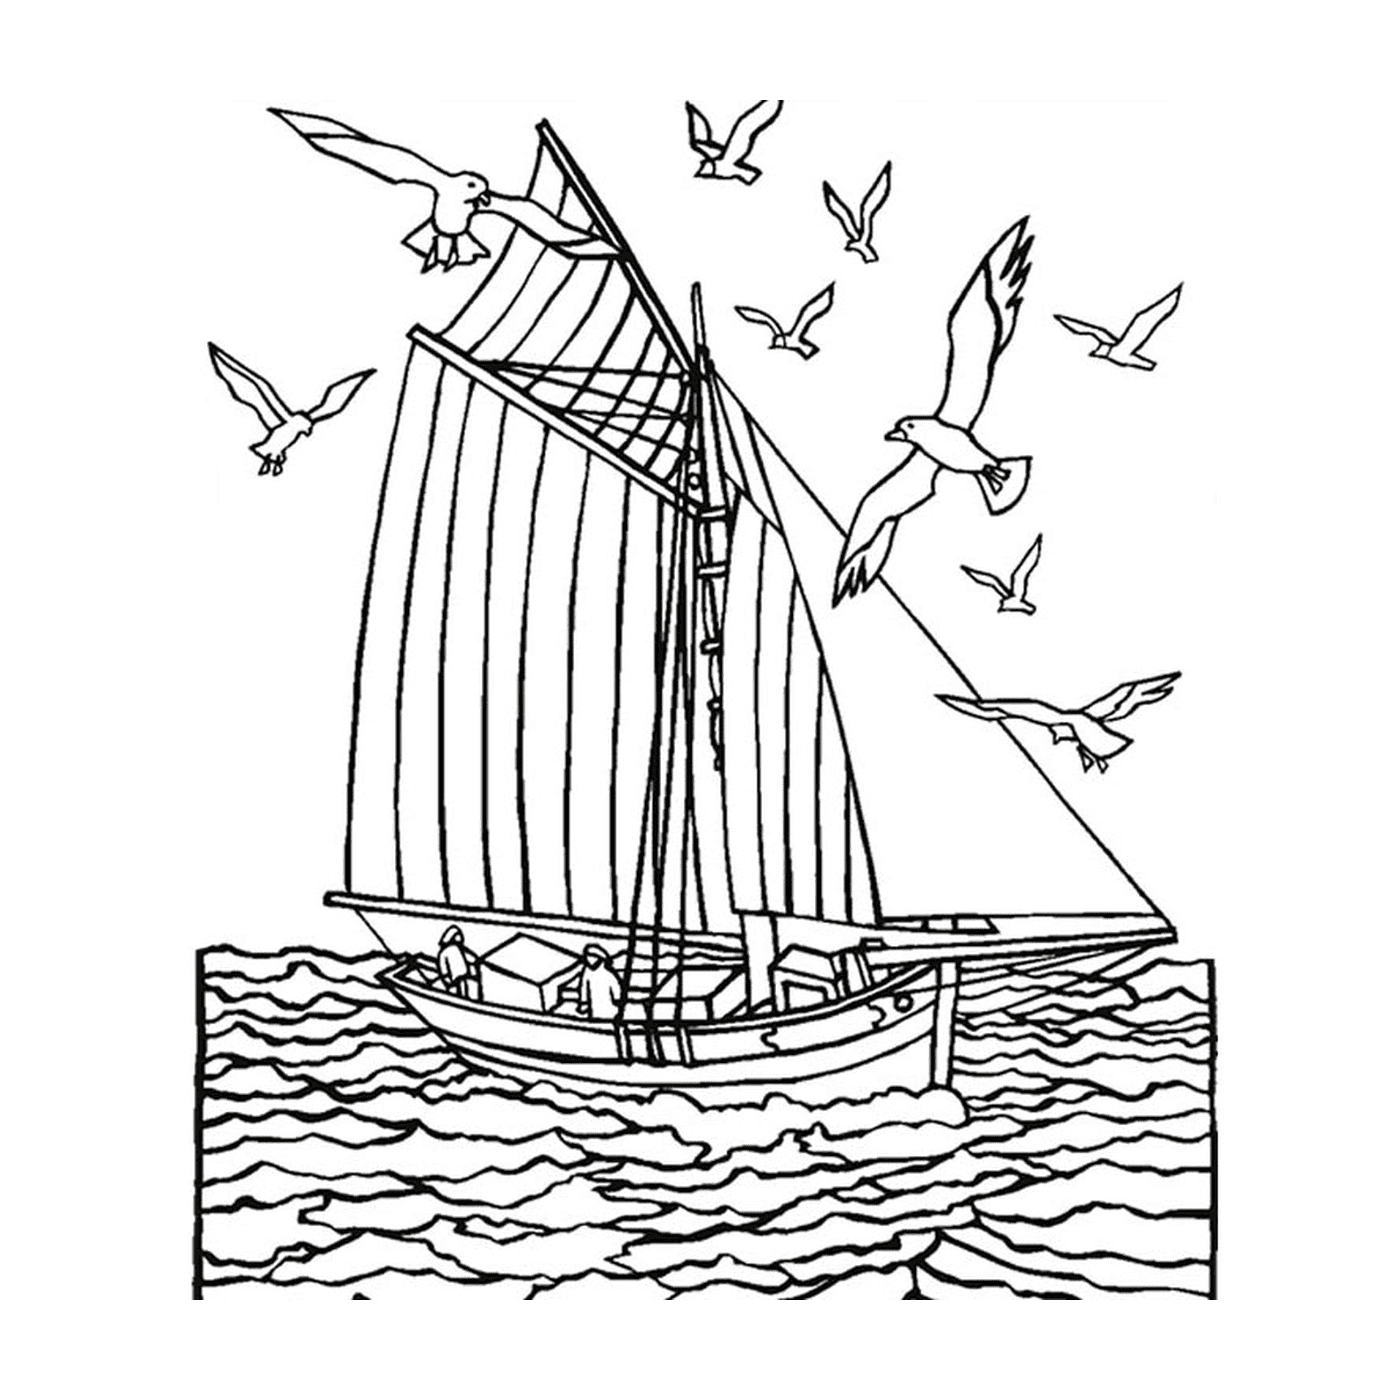  O mar com um veleiro 